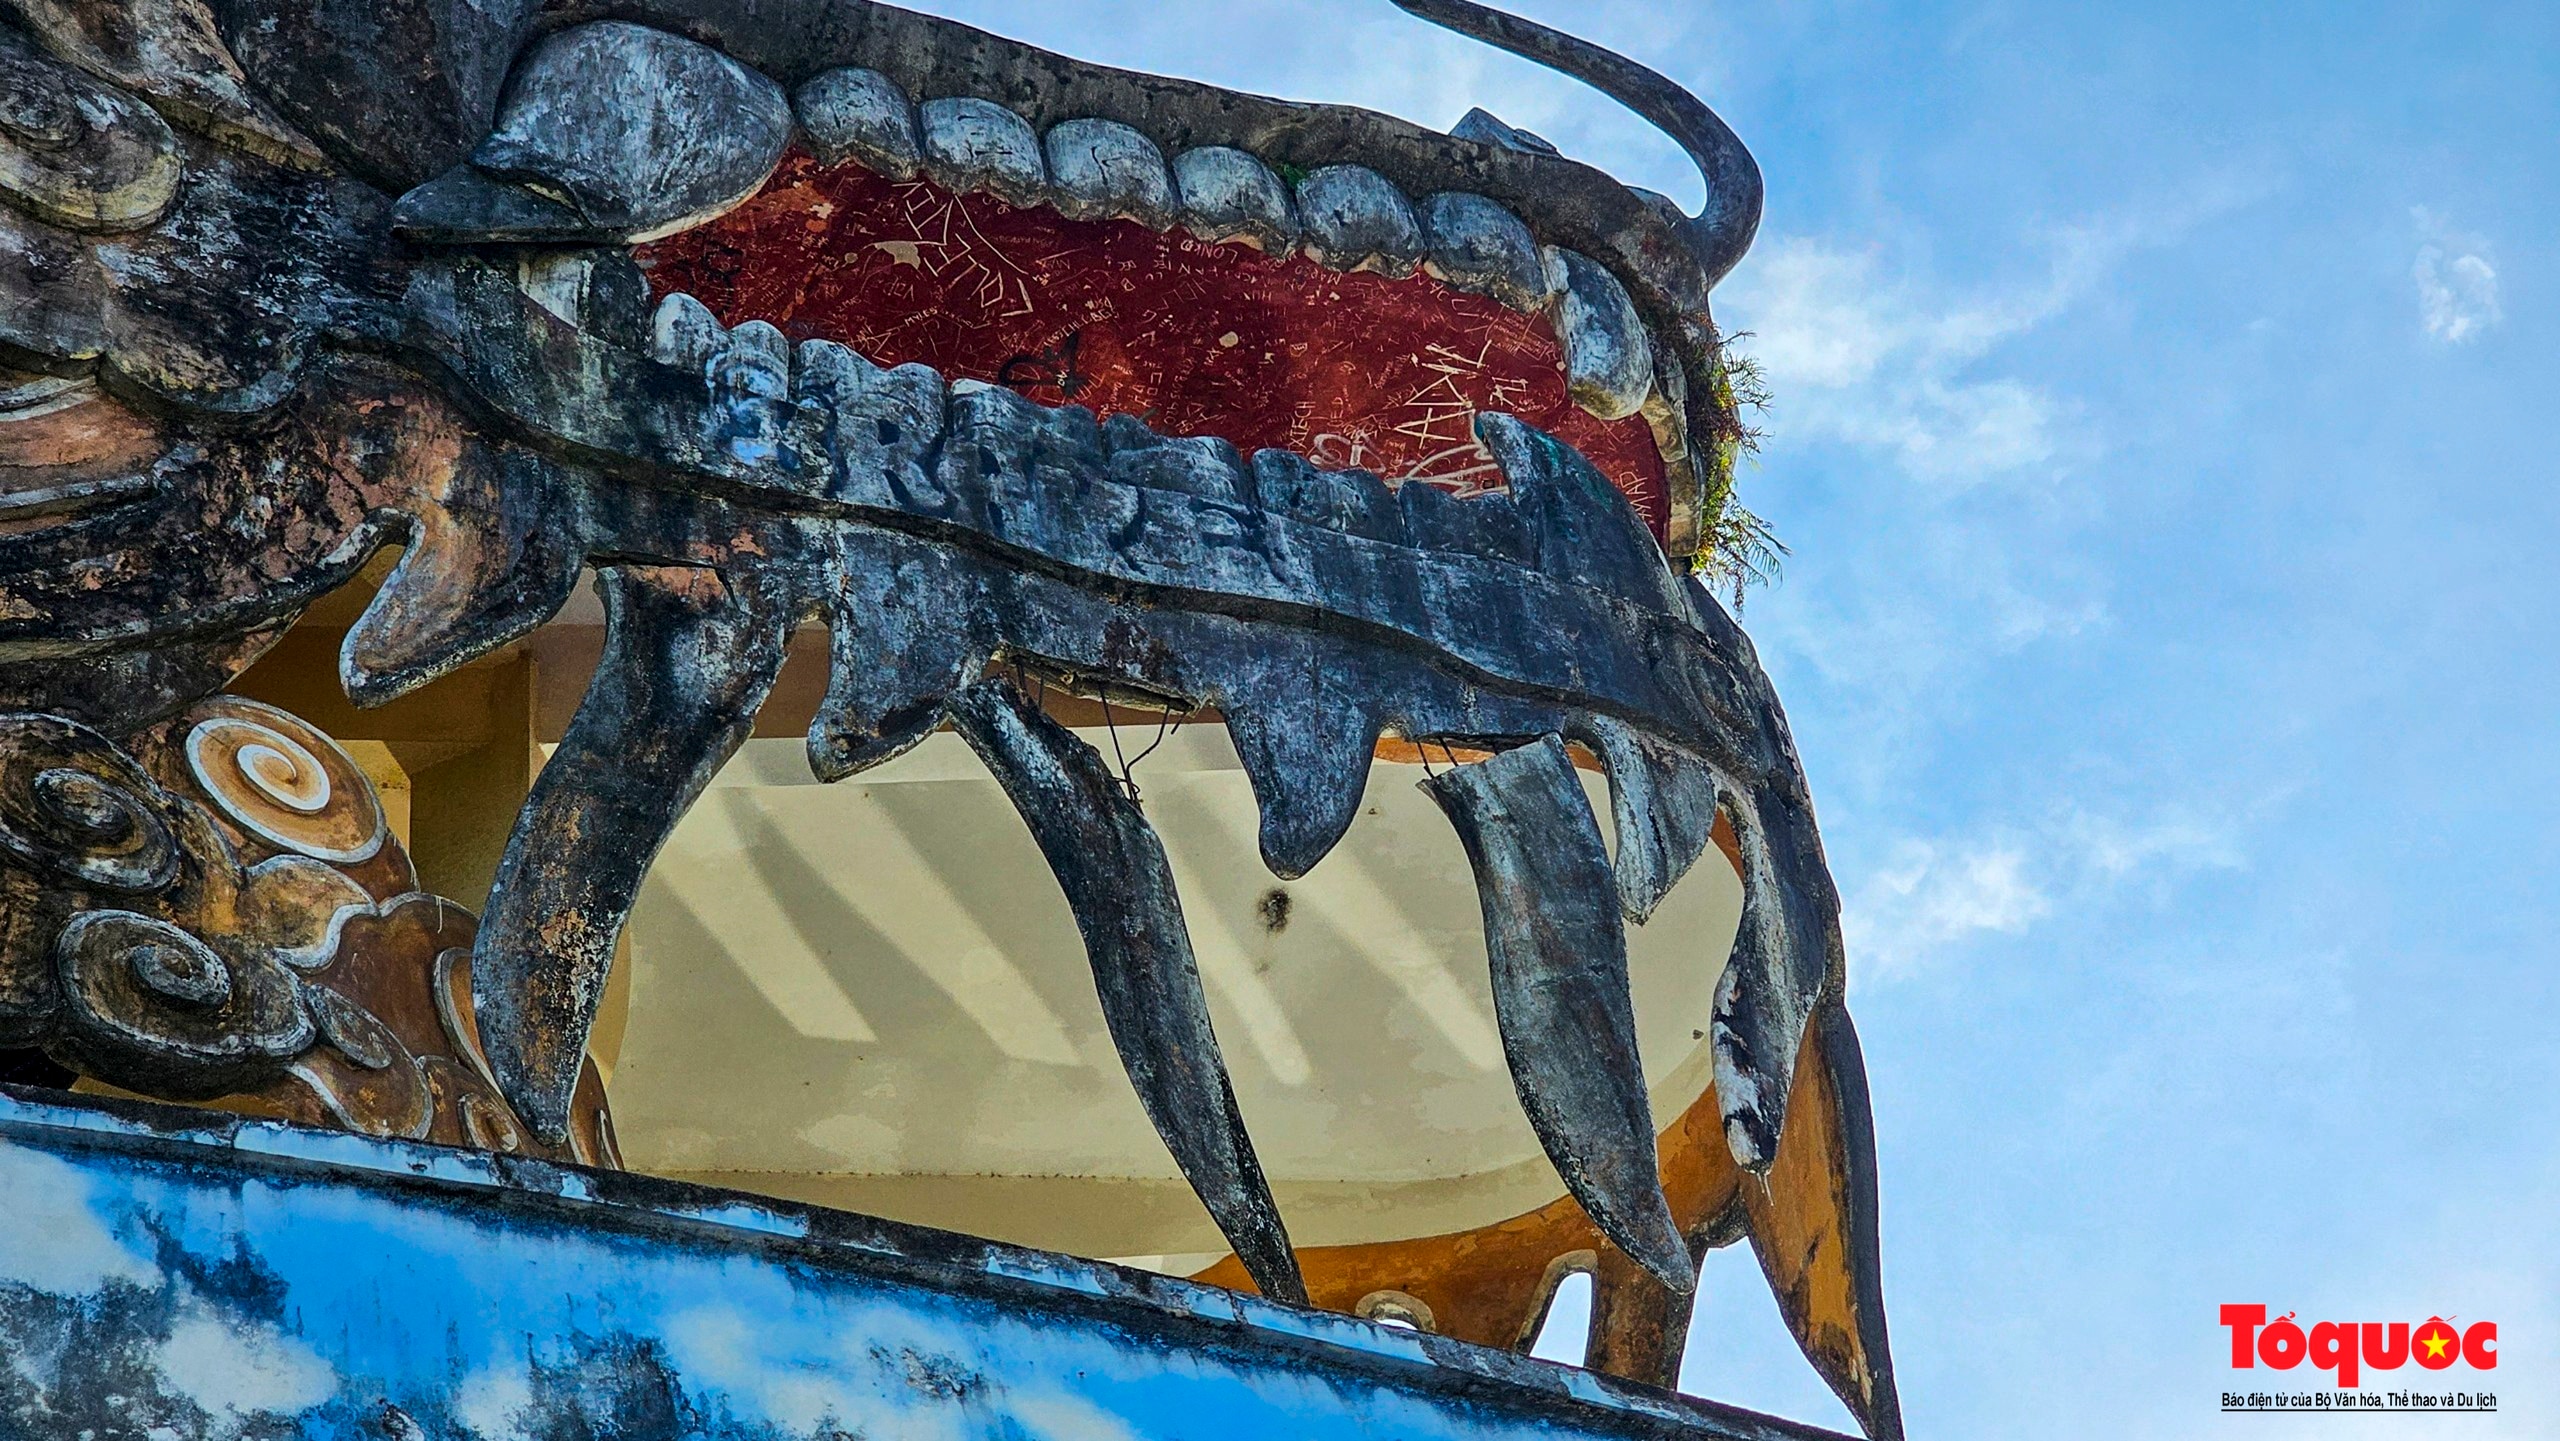 Du khách mong muốn giữ lại tượng rồng khổng lồ tại TP Huế để phục vụ du lịch - Ảnh 4.